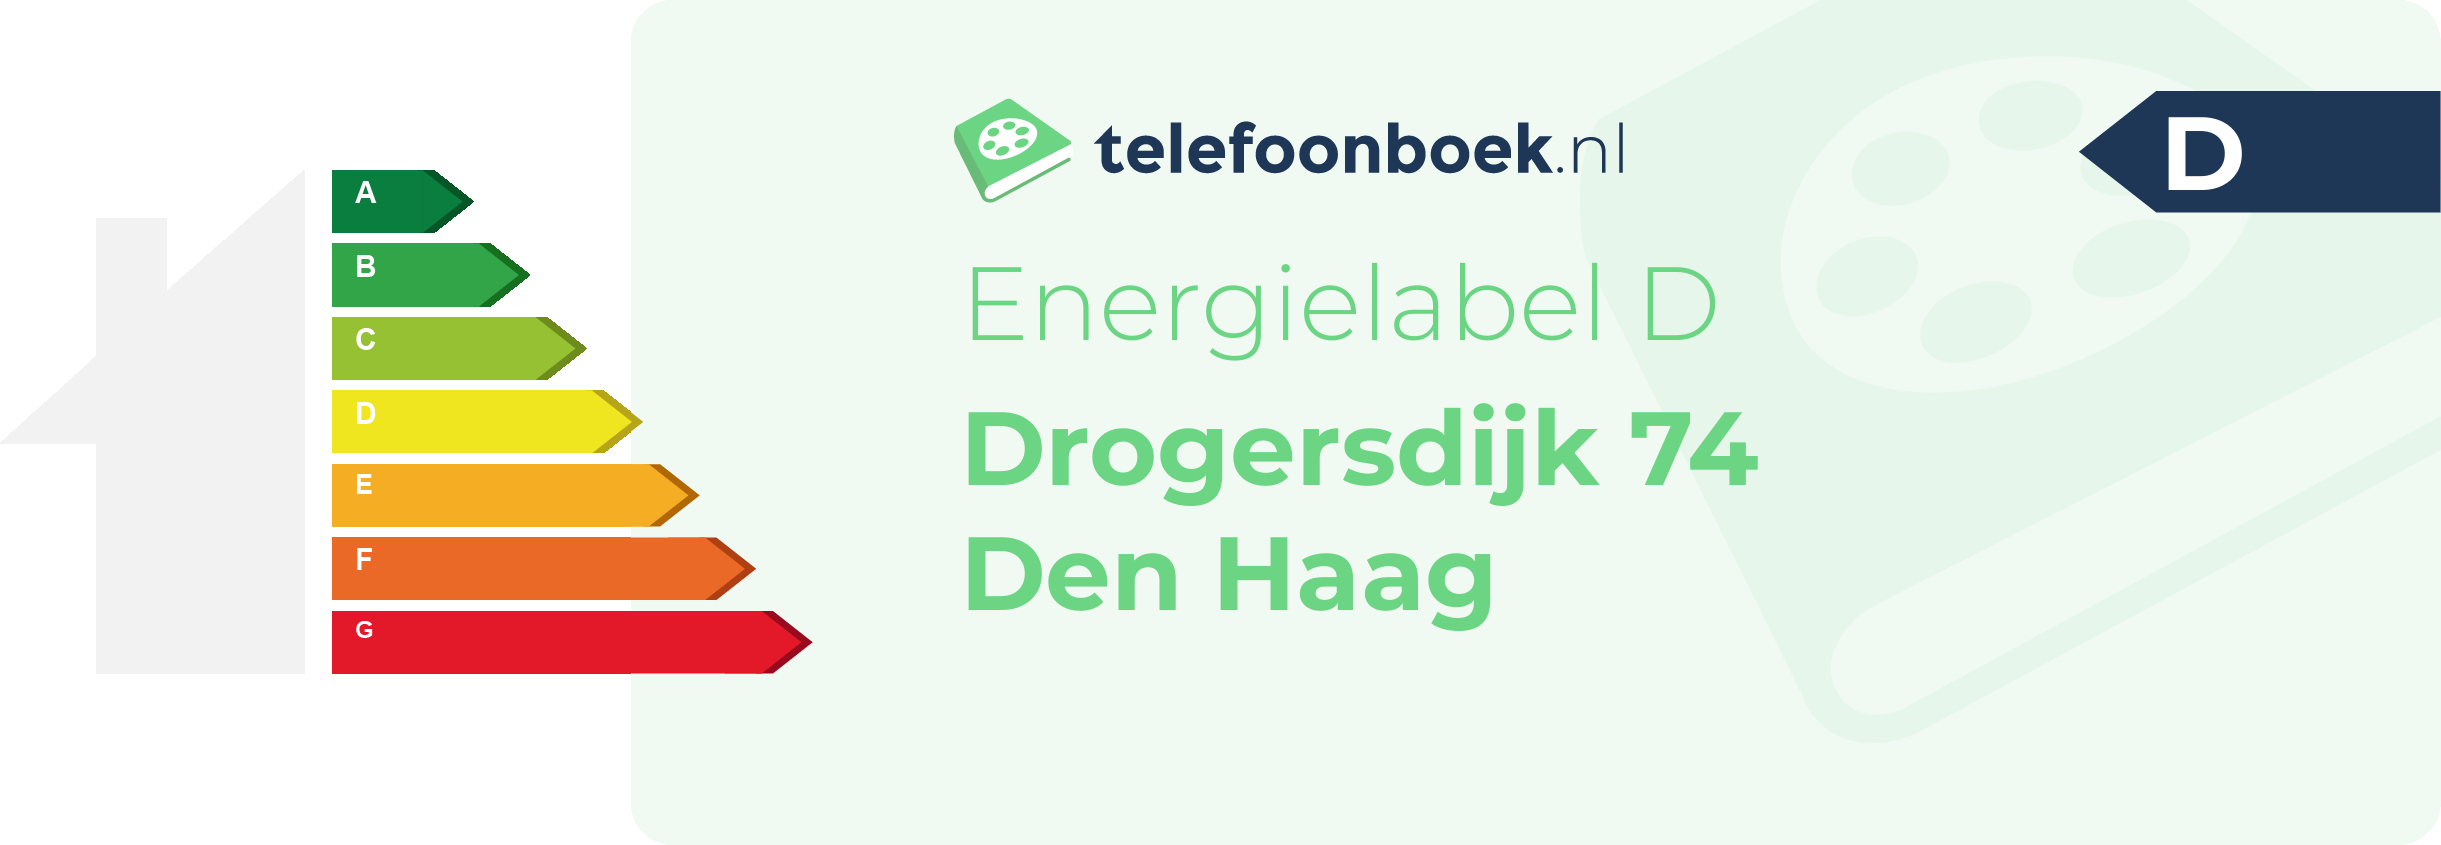 Energielabel Drogersdijk 74 Den Haag